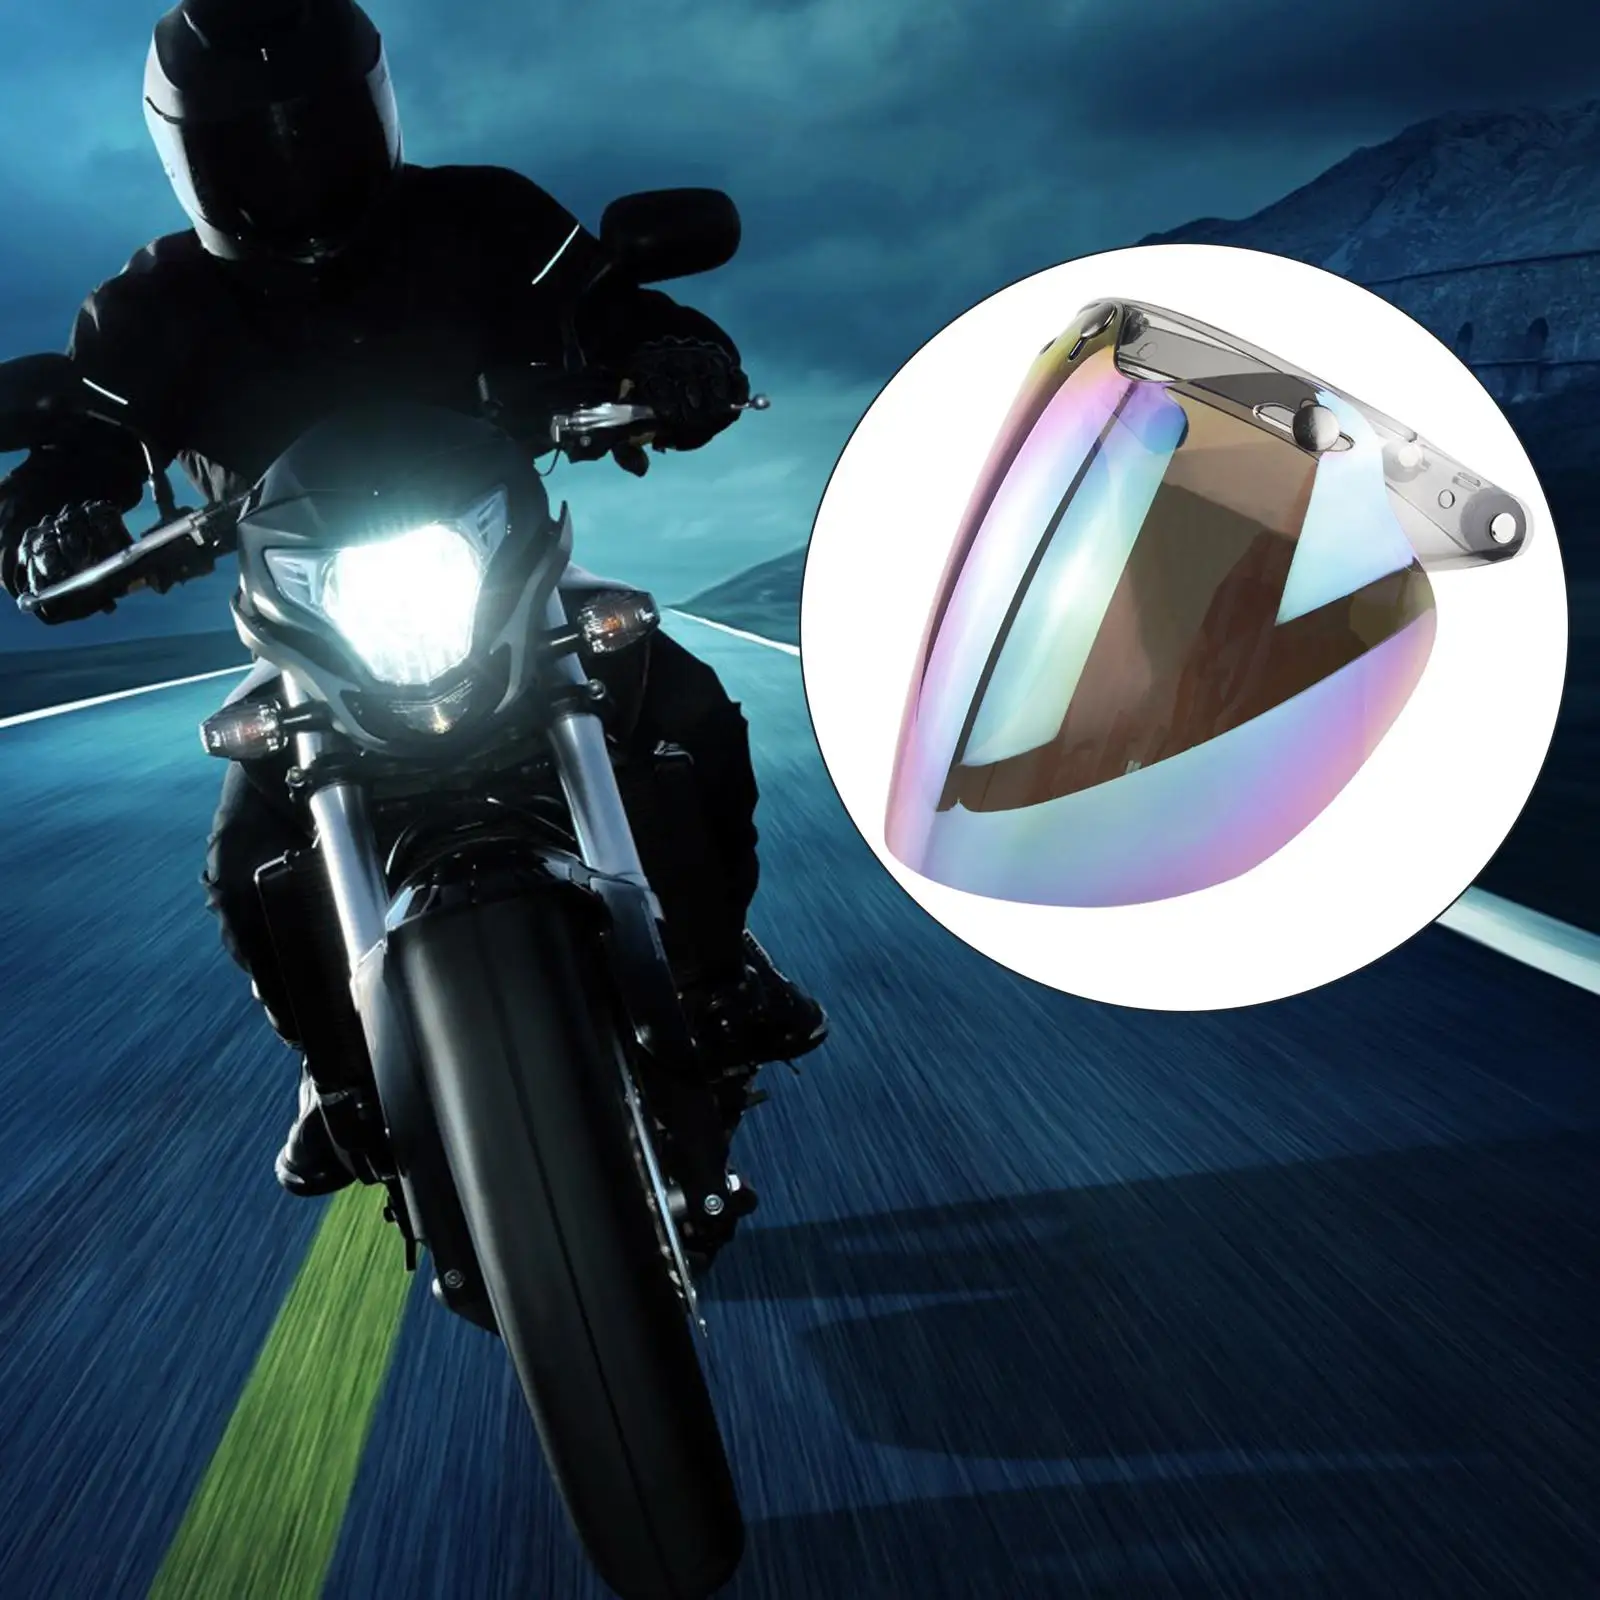 Motorcycle 3 Snap Visor Lens Shield for Open Face Motorcycle Helmets Face Mask Wind Shield Len Front Flip up Helmet Lens Visor